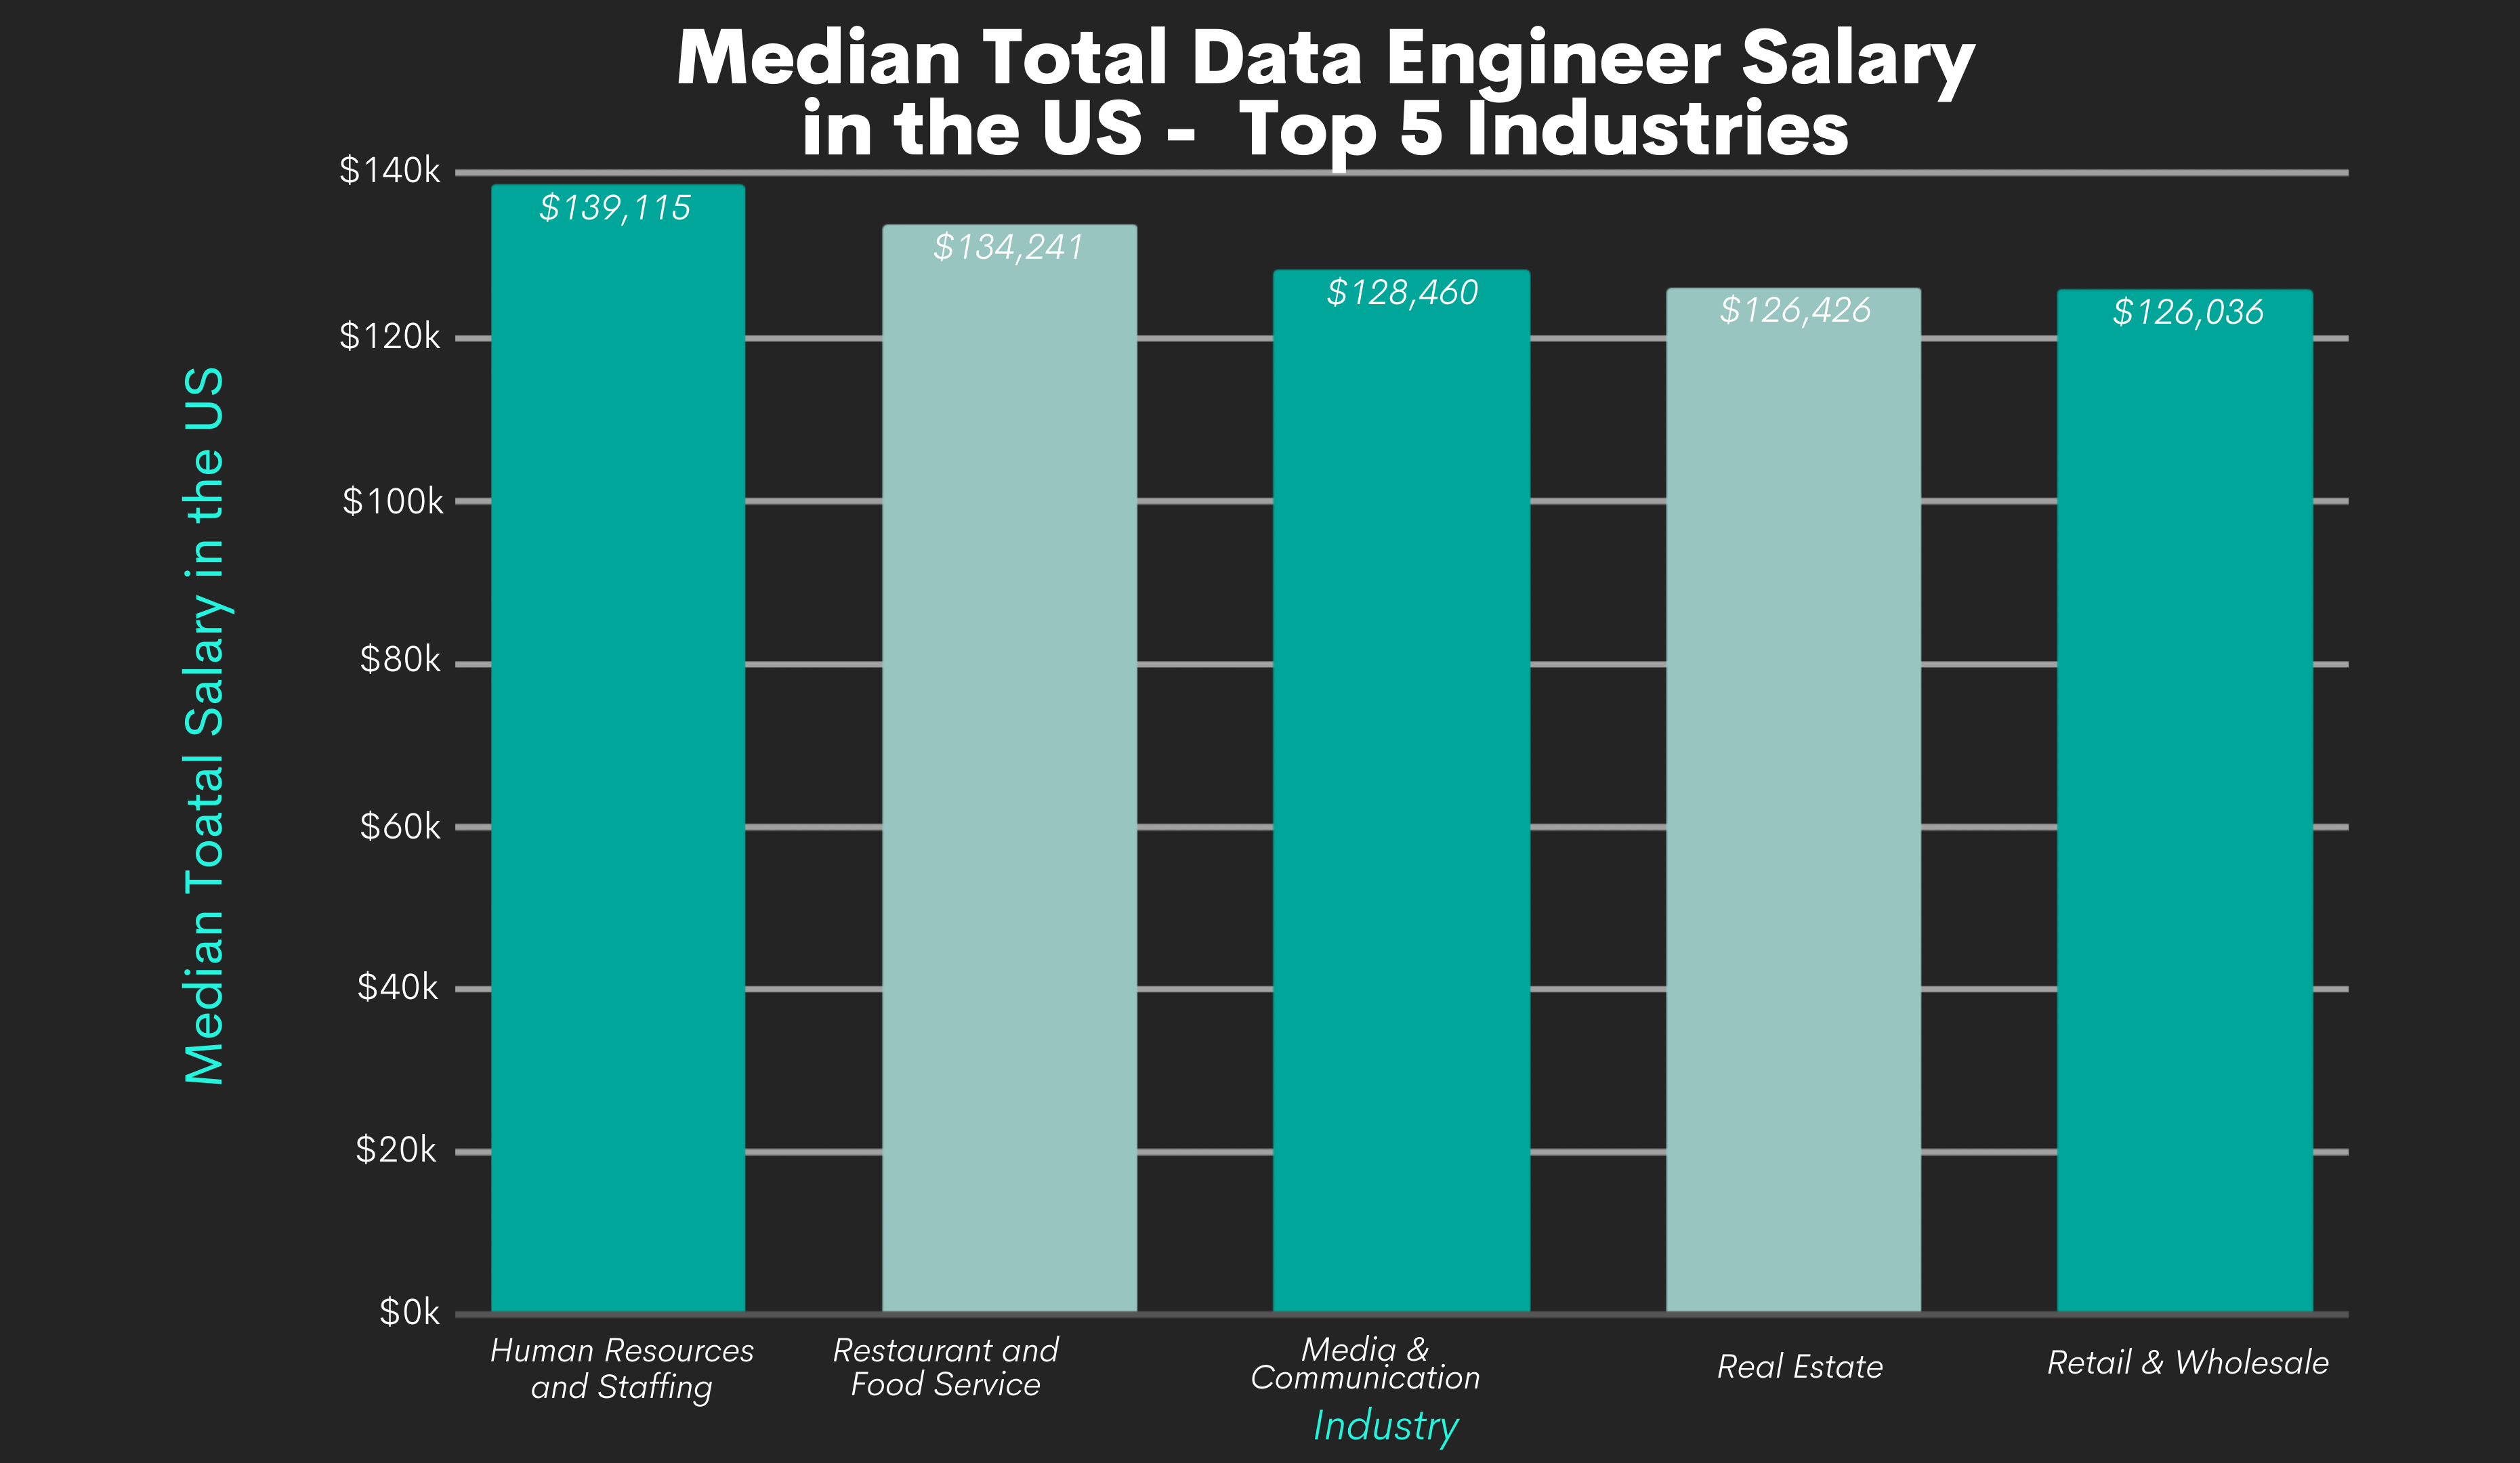 Data Engineer Salaries by Industries